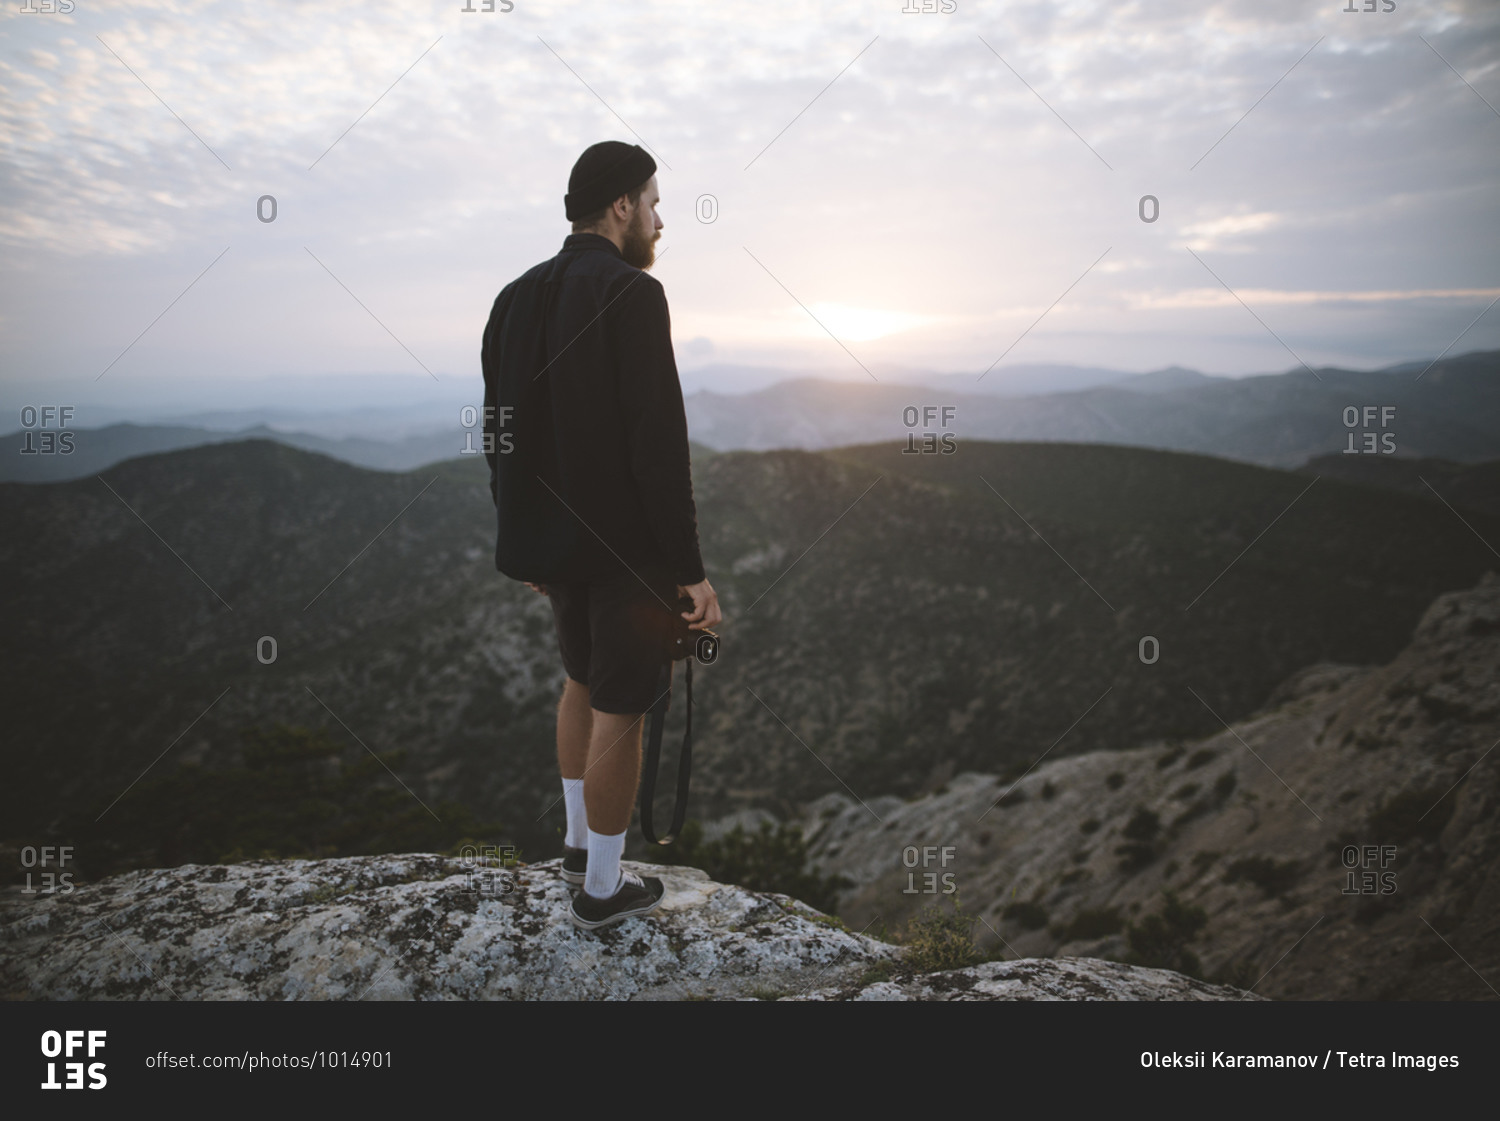 Italy, Liguria, La Spezia, Man looking at mountain range from mountain top